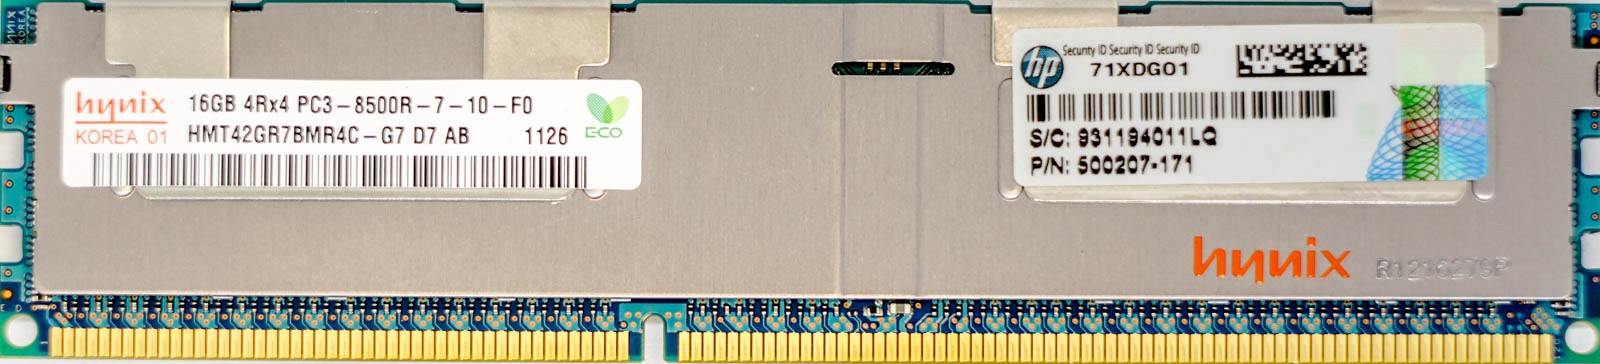 HP (500207-171) - 16GB PC3-8500R (DDR3-1066Mhz, 4RX4)